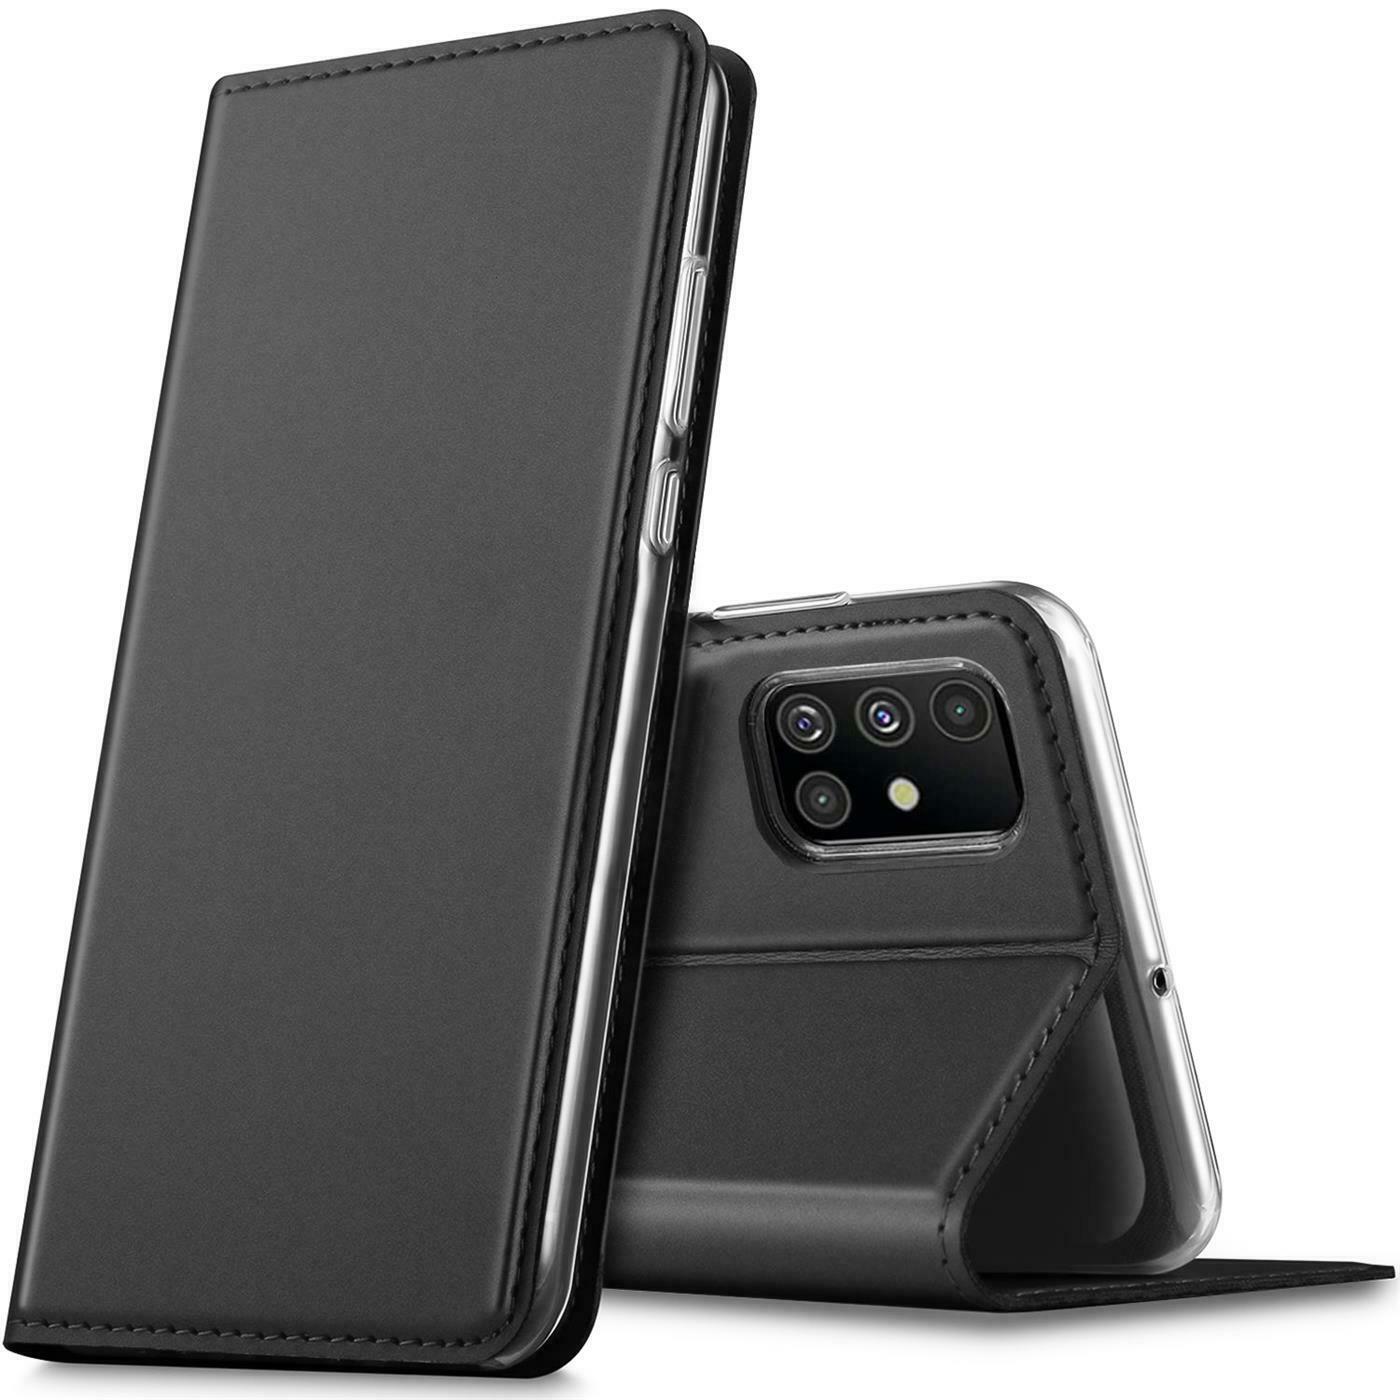 Pouzdro FLIP pro Samsung Galaxy A51 černé